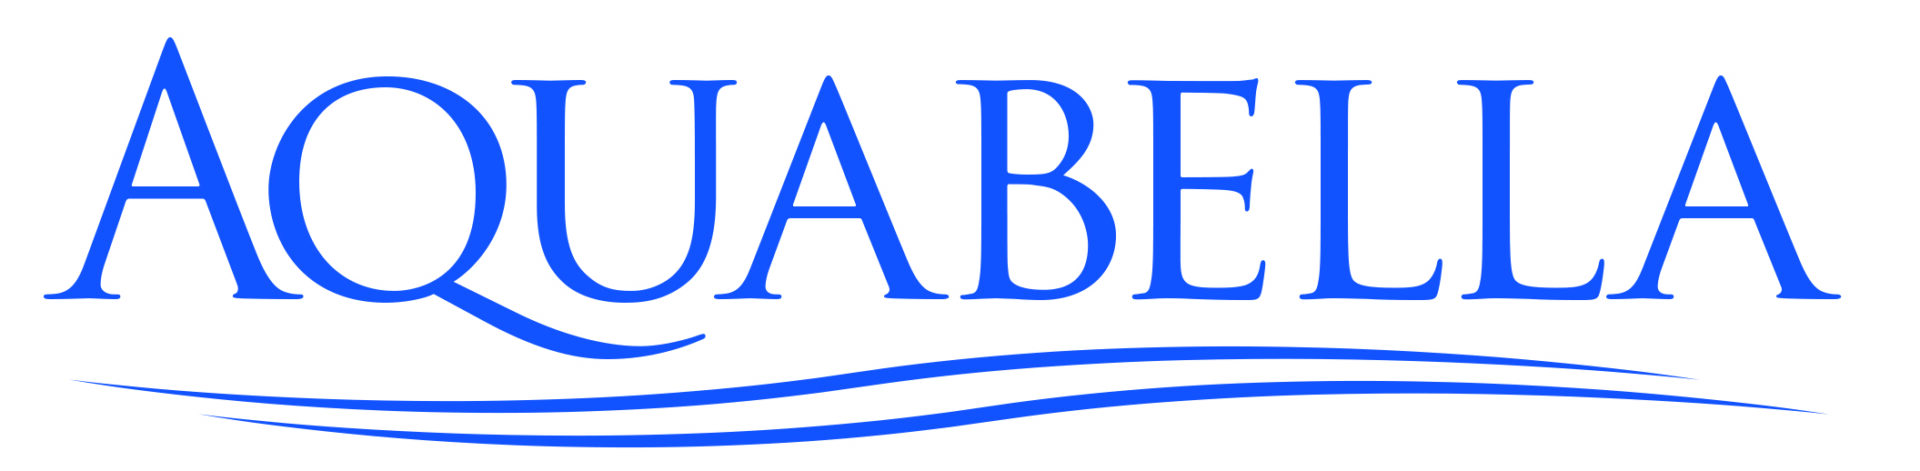 Aquabella logo